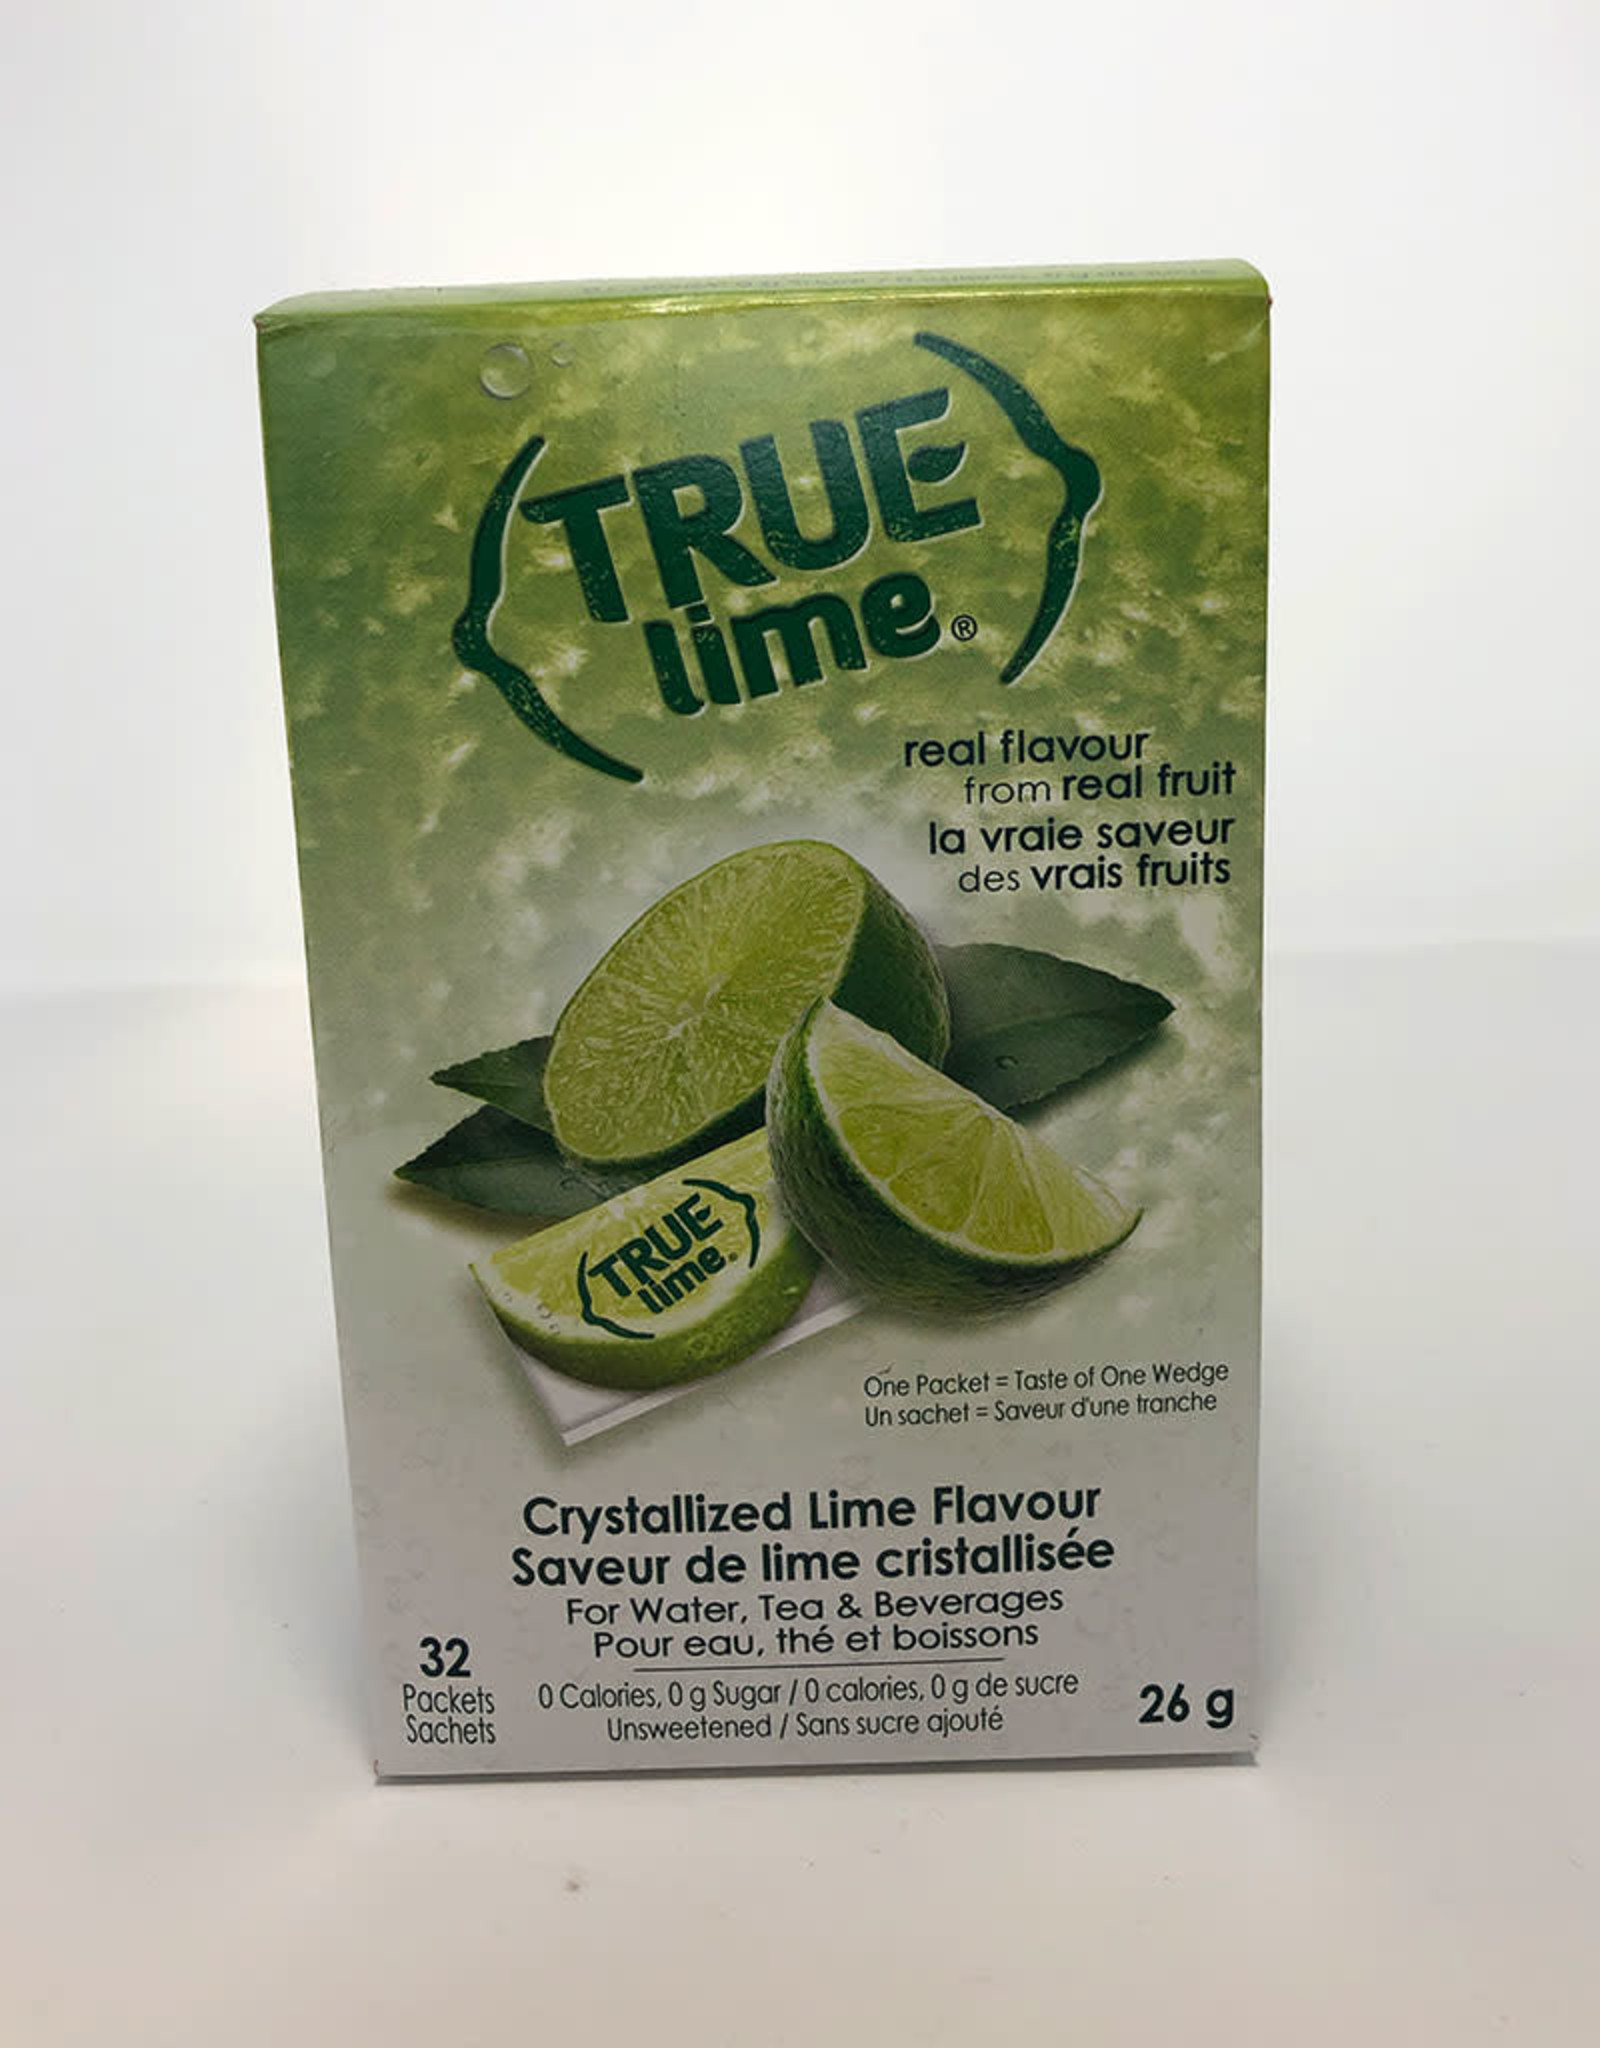 True Citrus True Citrus - True Lime (32pk)